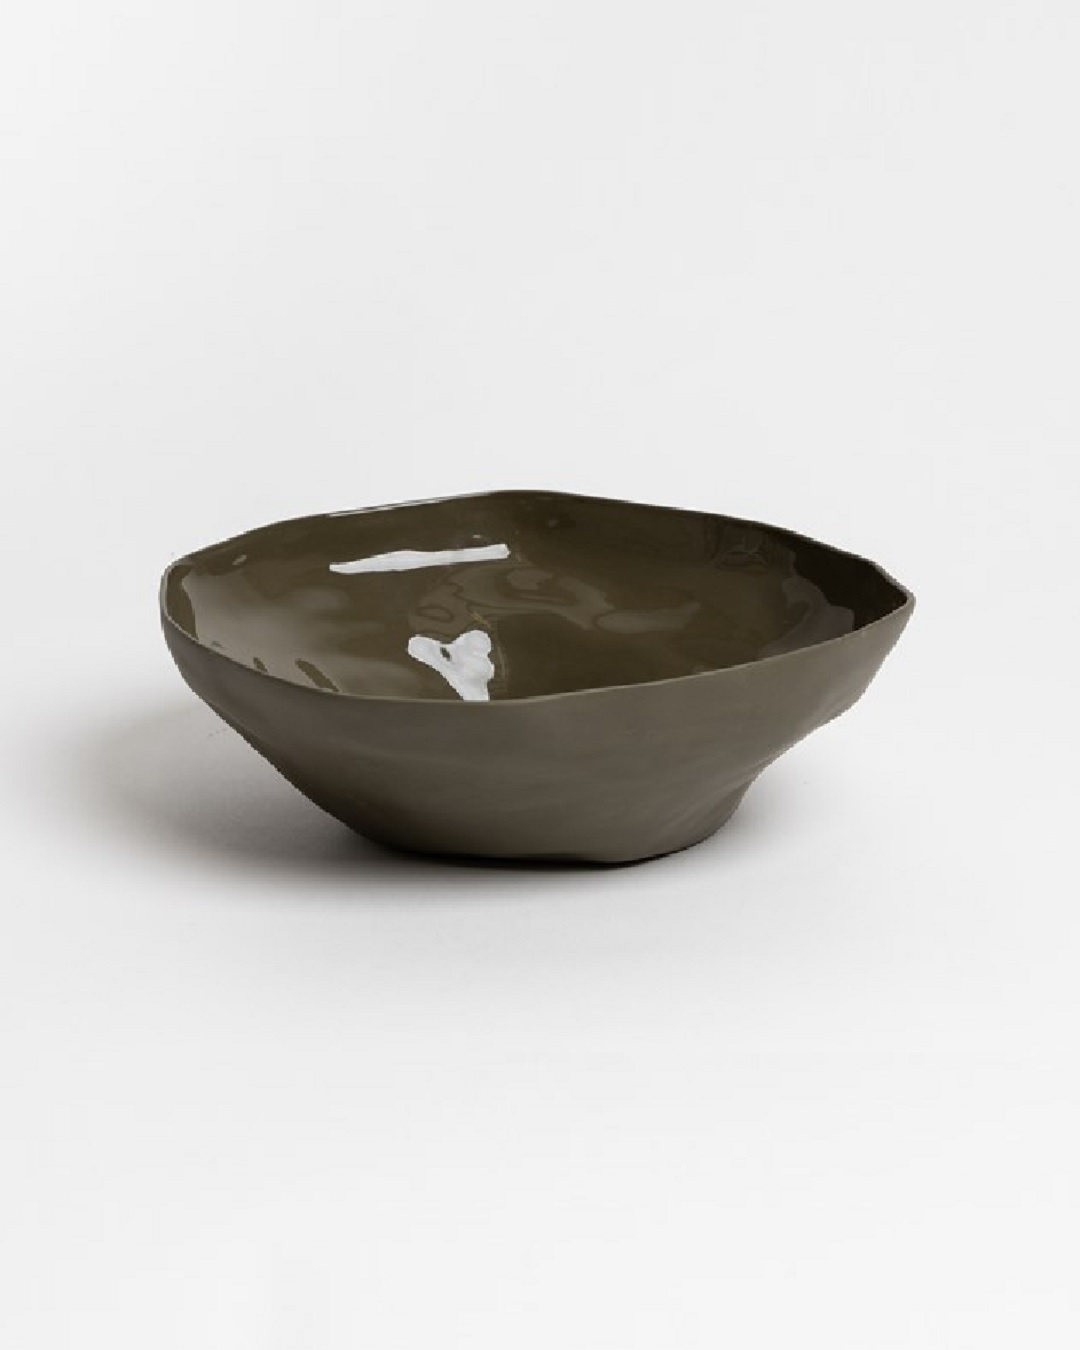 Olive green ceramic bowl